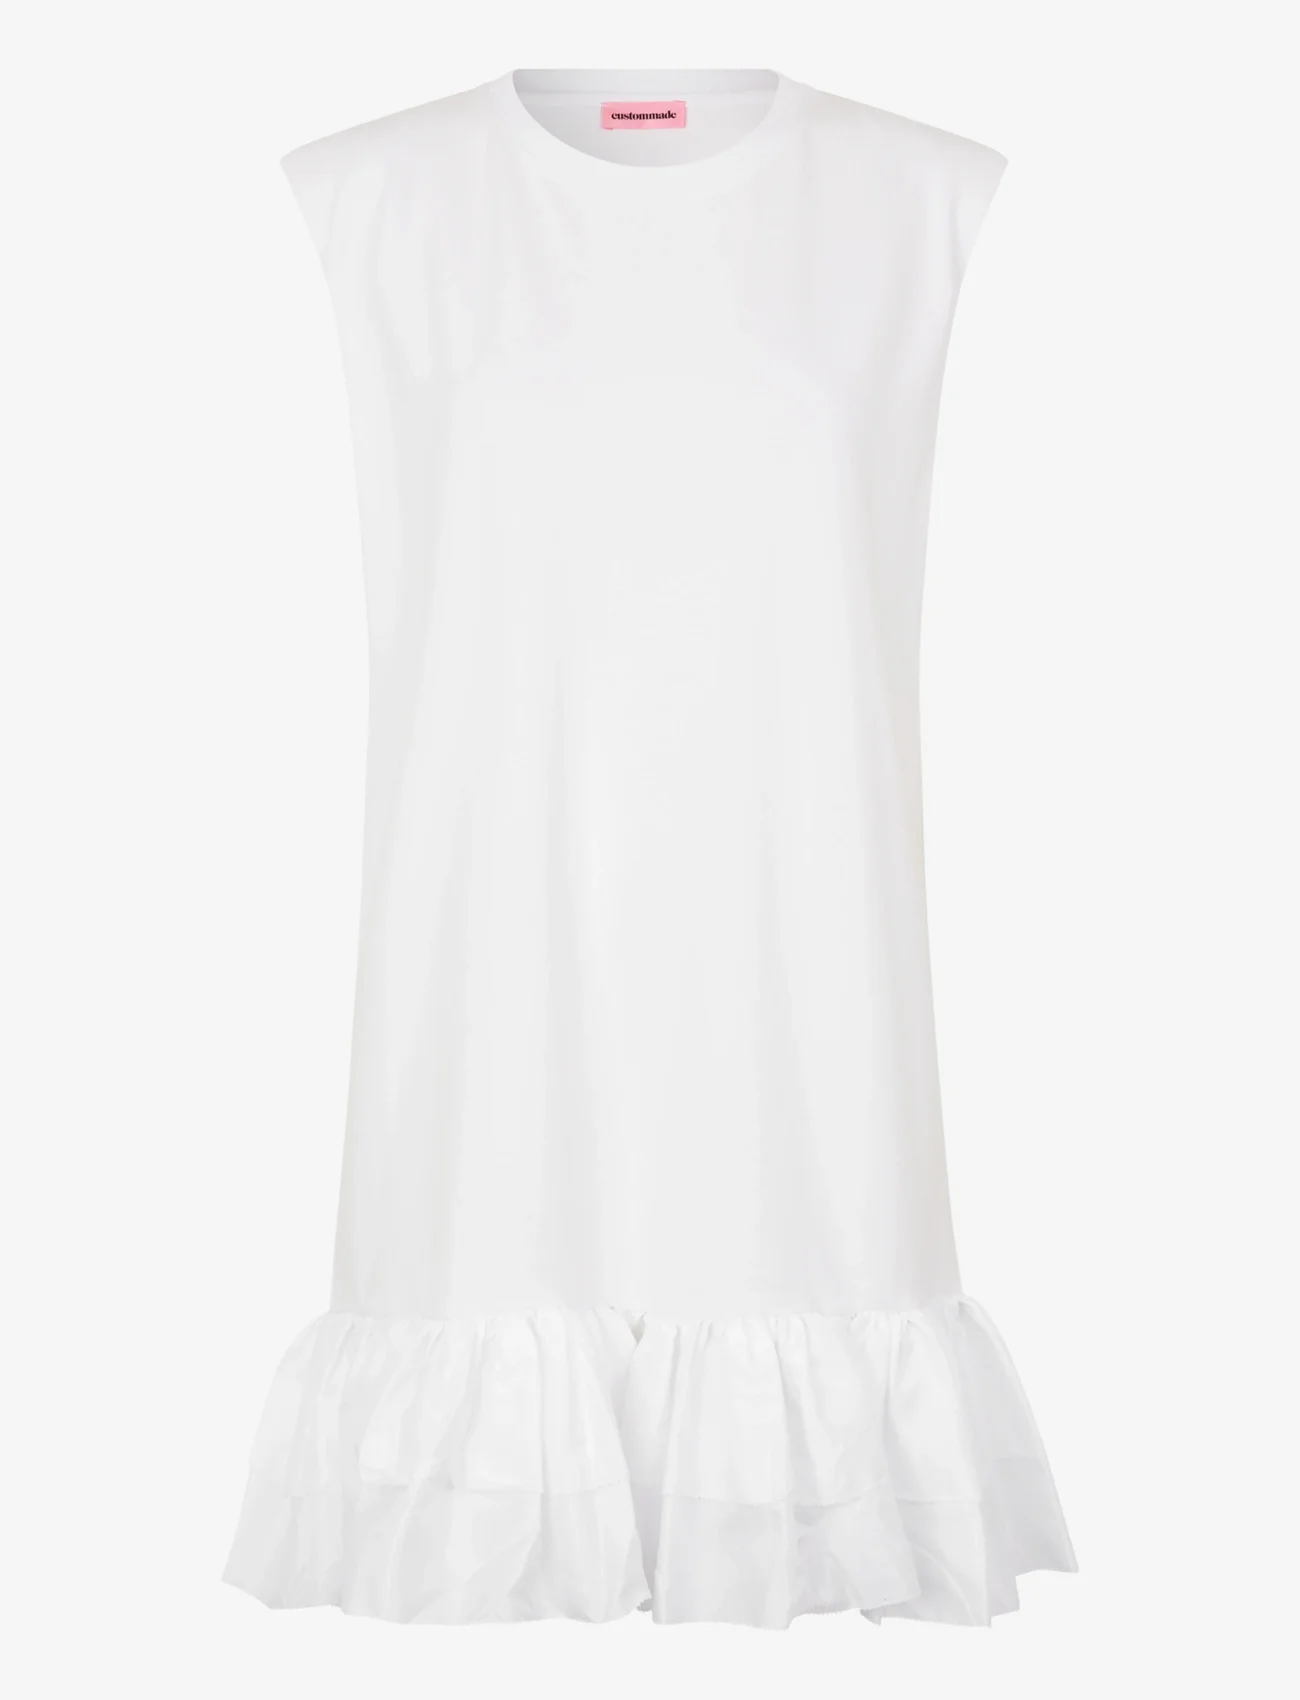 Custommade - Joan - t-shirt dresses - 001 bright white - 0